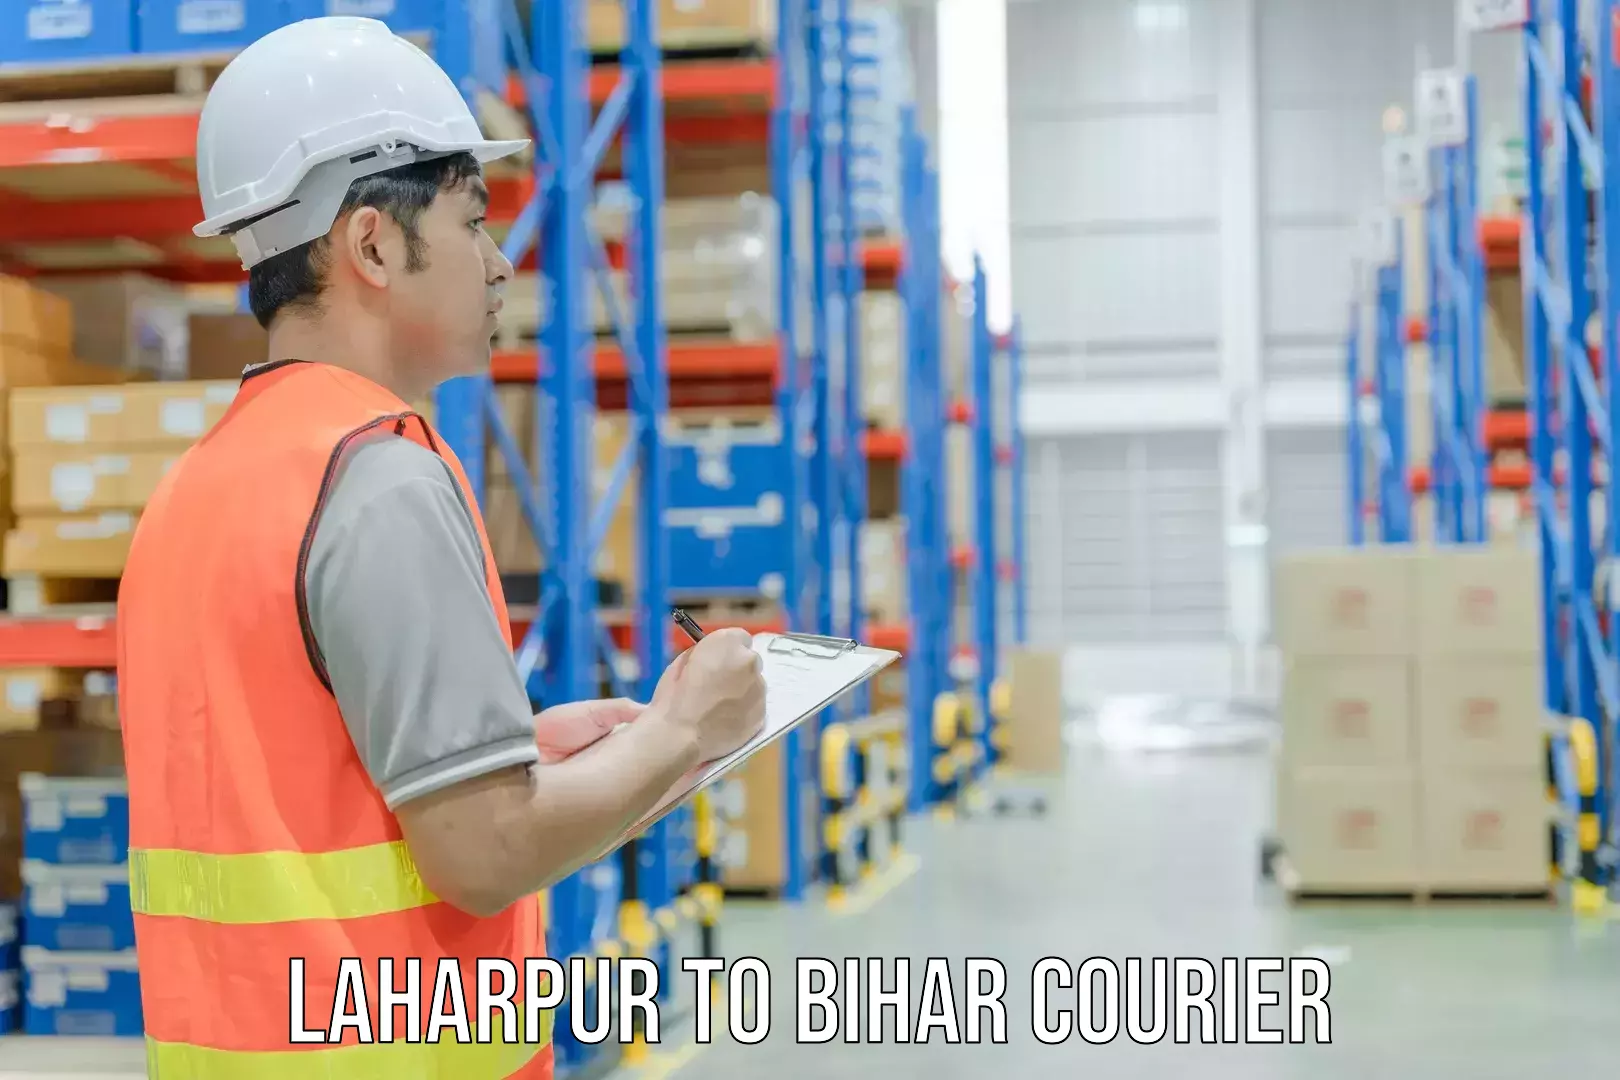 Digital courier platforms Laharpur to Chakia